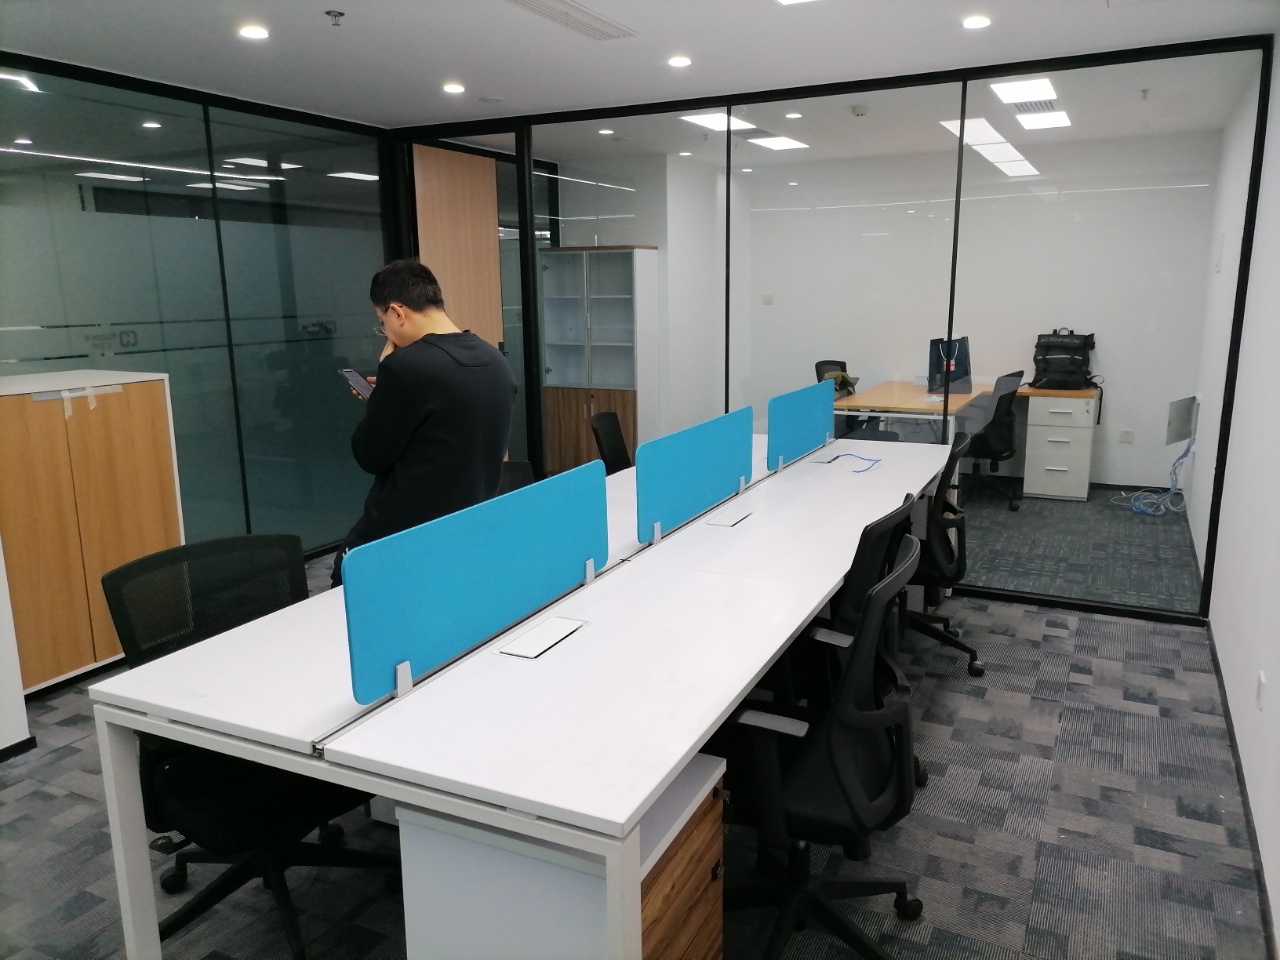 錦江區金石路地鐵口匯融廣場精裝小面積辦公室 創業首首選 性價比超高 含物業